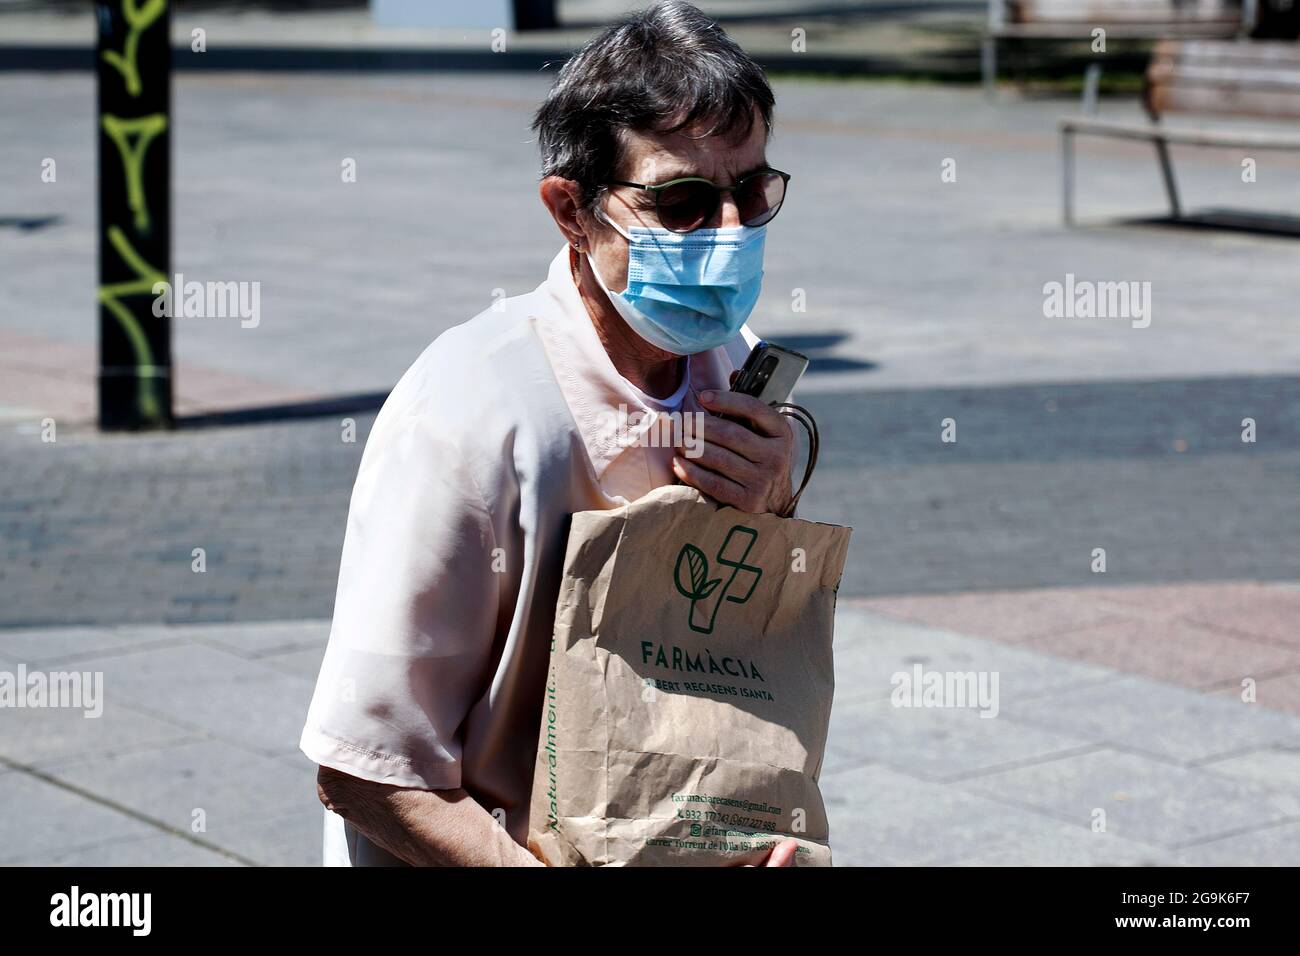 Donna mascherata innesti la sua borsa di farmaci, Barcellona, Spagna. Foto Stock